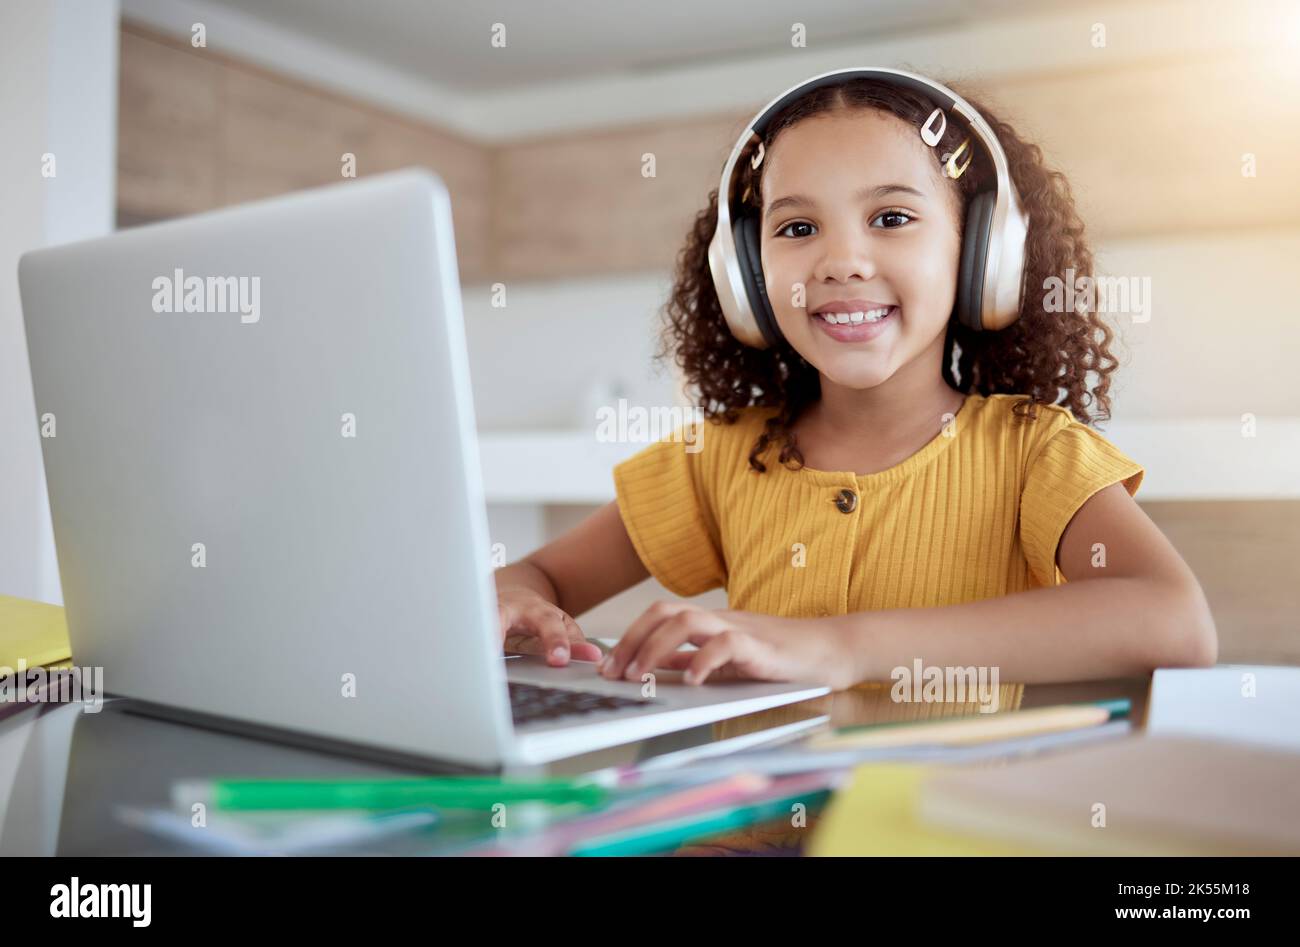 Lernen, schreiben und Mädchen auf dem Laptop mit Kopfhörern im Internet-Klasse, Online-Studium oder Web-elearning. Homeschooling, Bildung und glückliches Kind oder Stockfoto